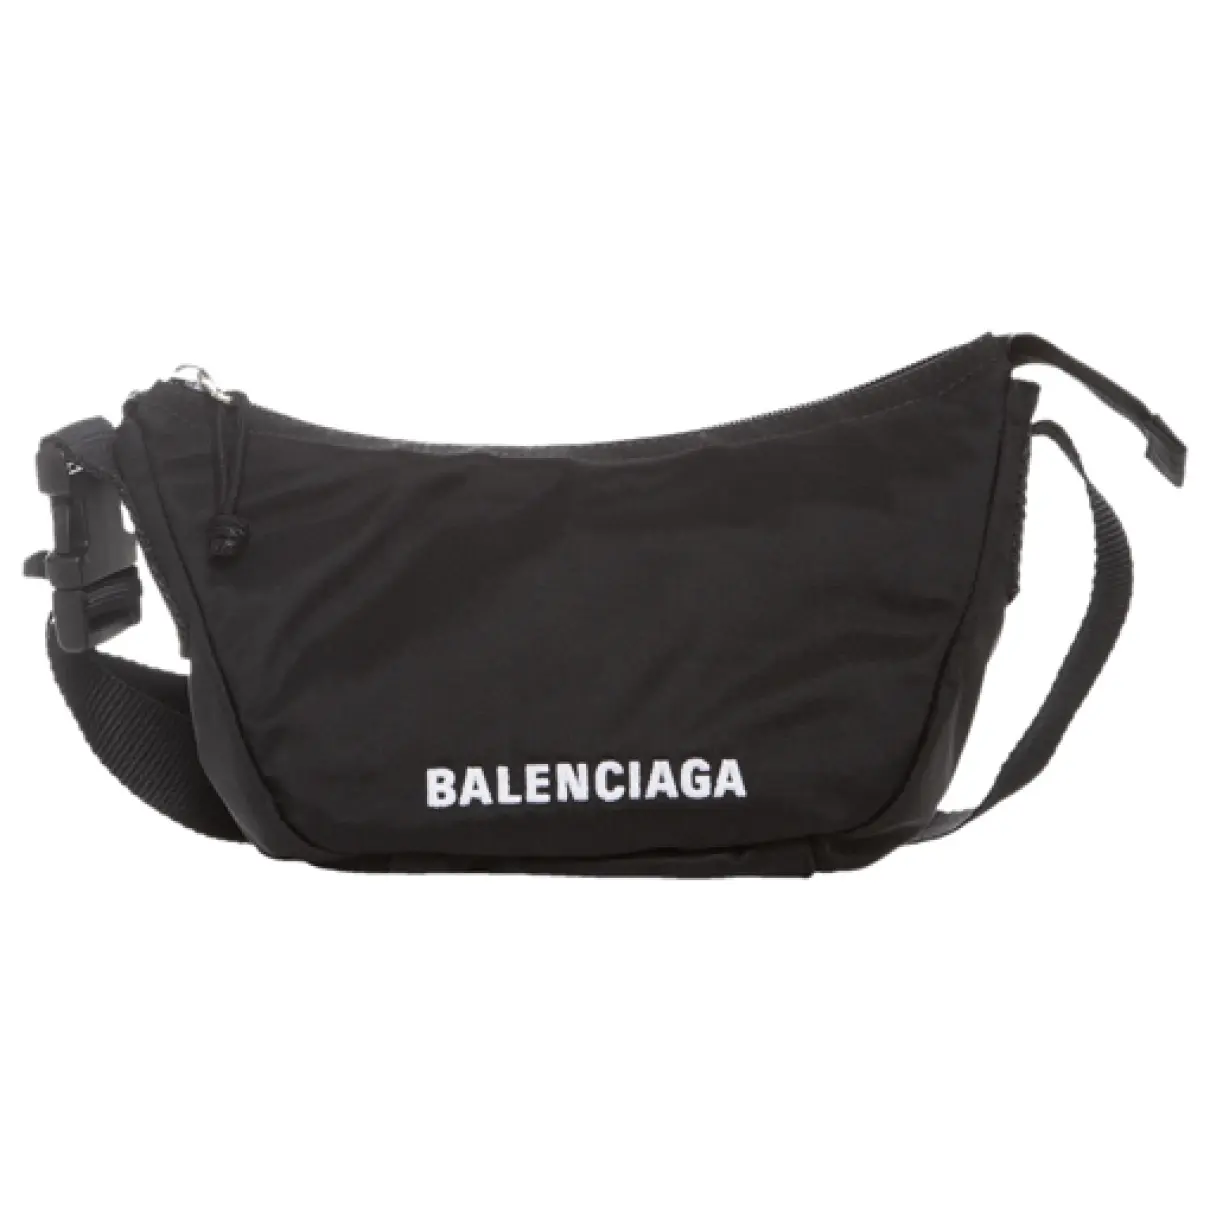 Wheel cloth handbag Balenciaga